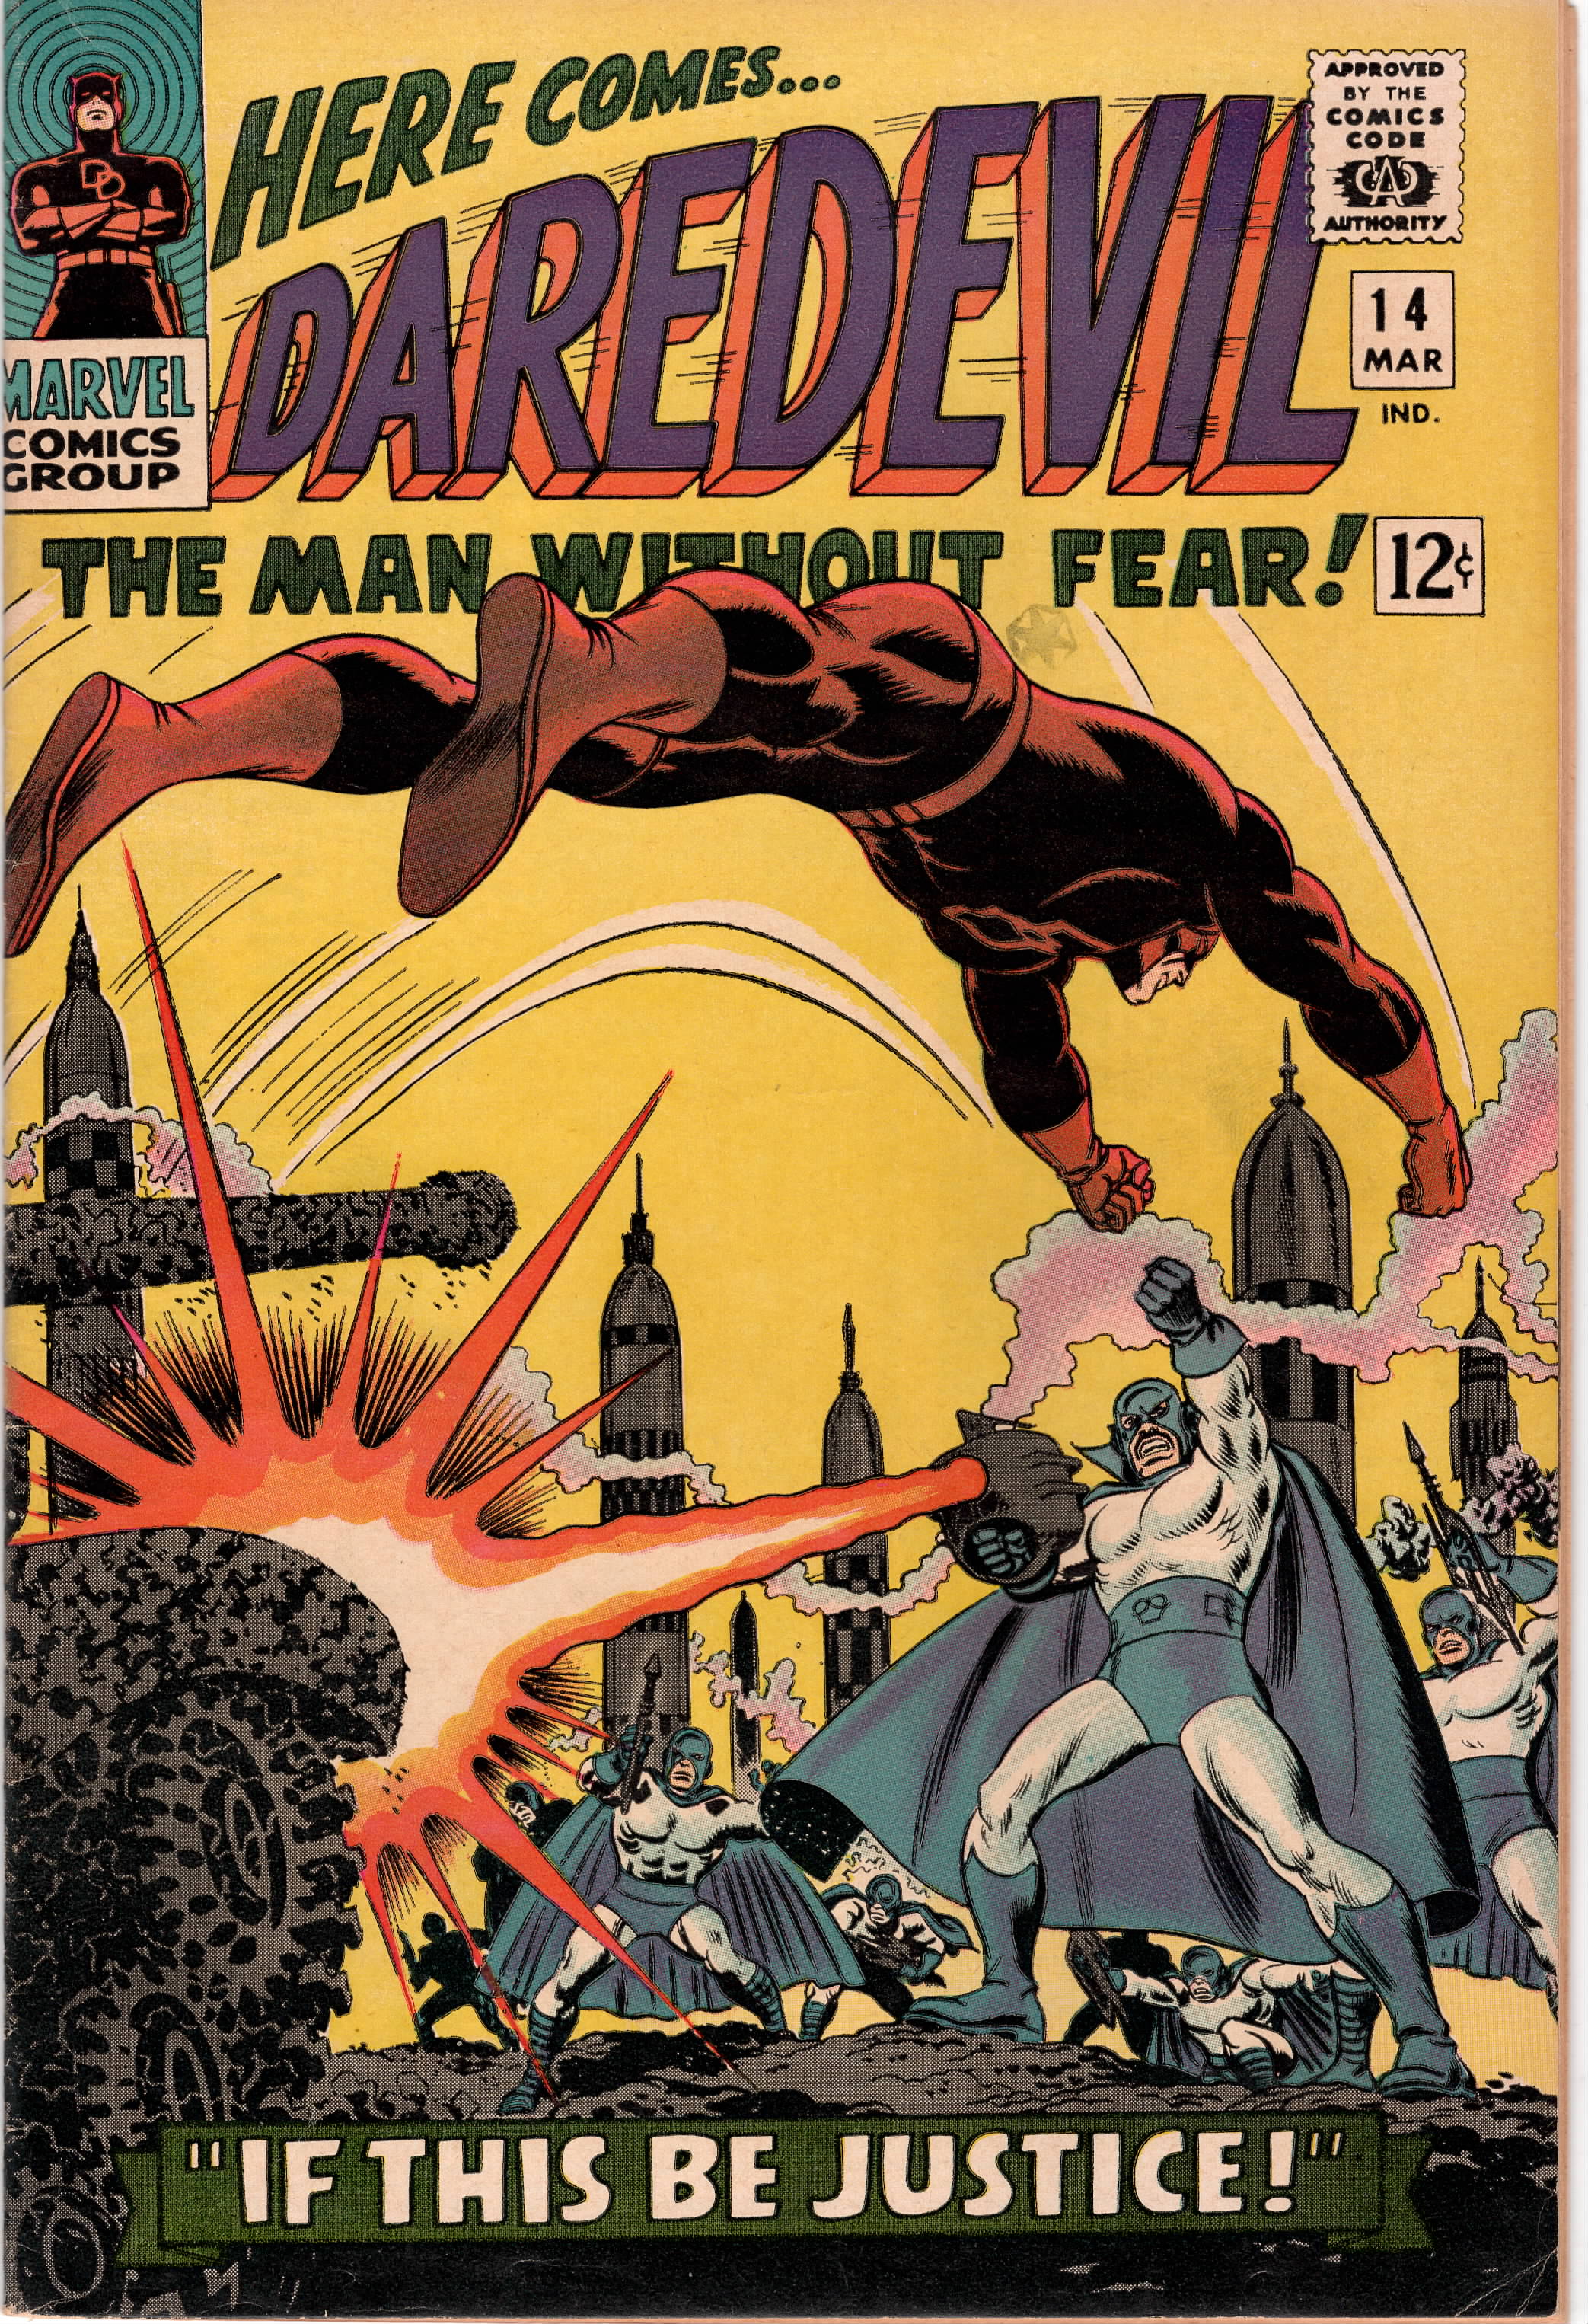 Daredevil #014